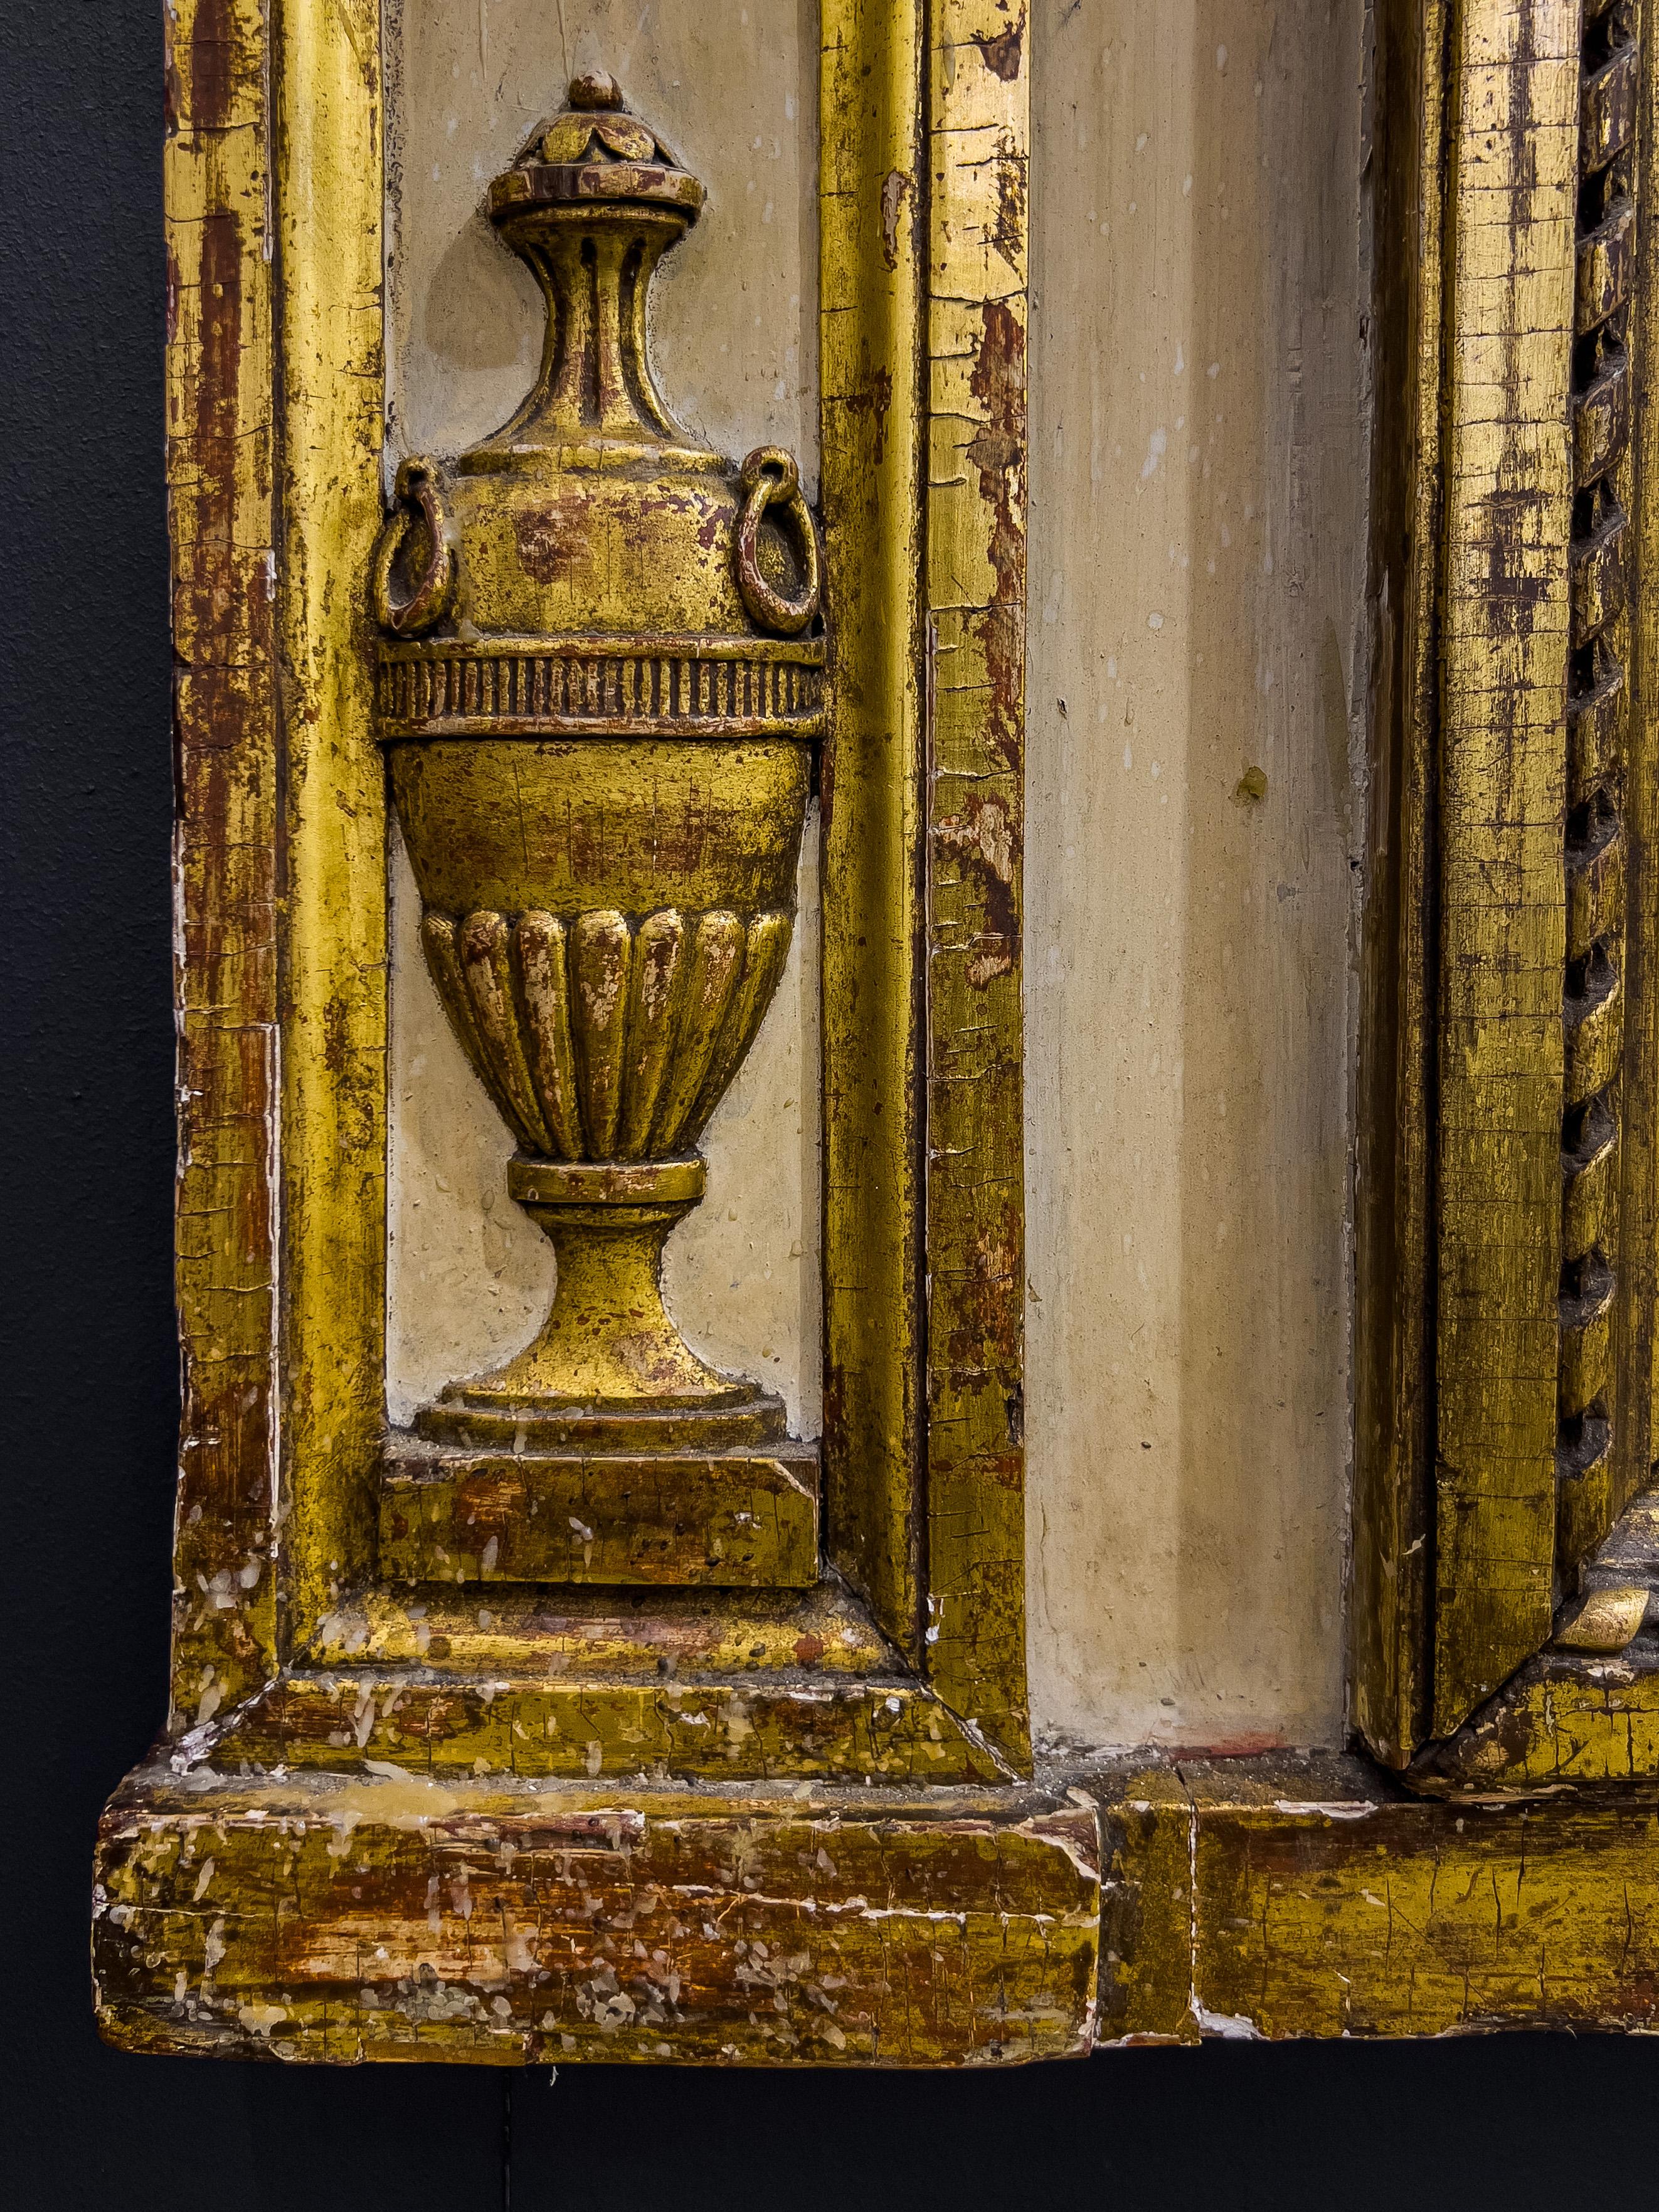 Miroir de cheminée néoclassique sculpté, peint et doré à la Parcel, datant du 19e C. Le miroir est en deux parties et la sculpture représente une guirlande de rosettes et d'urnes.